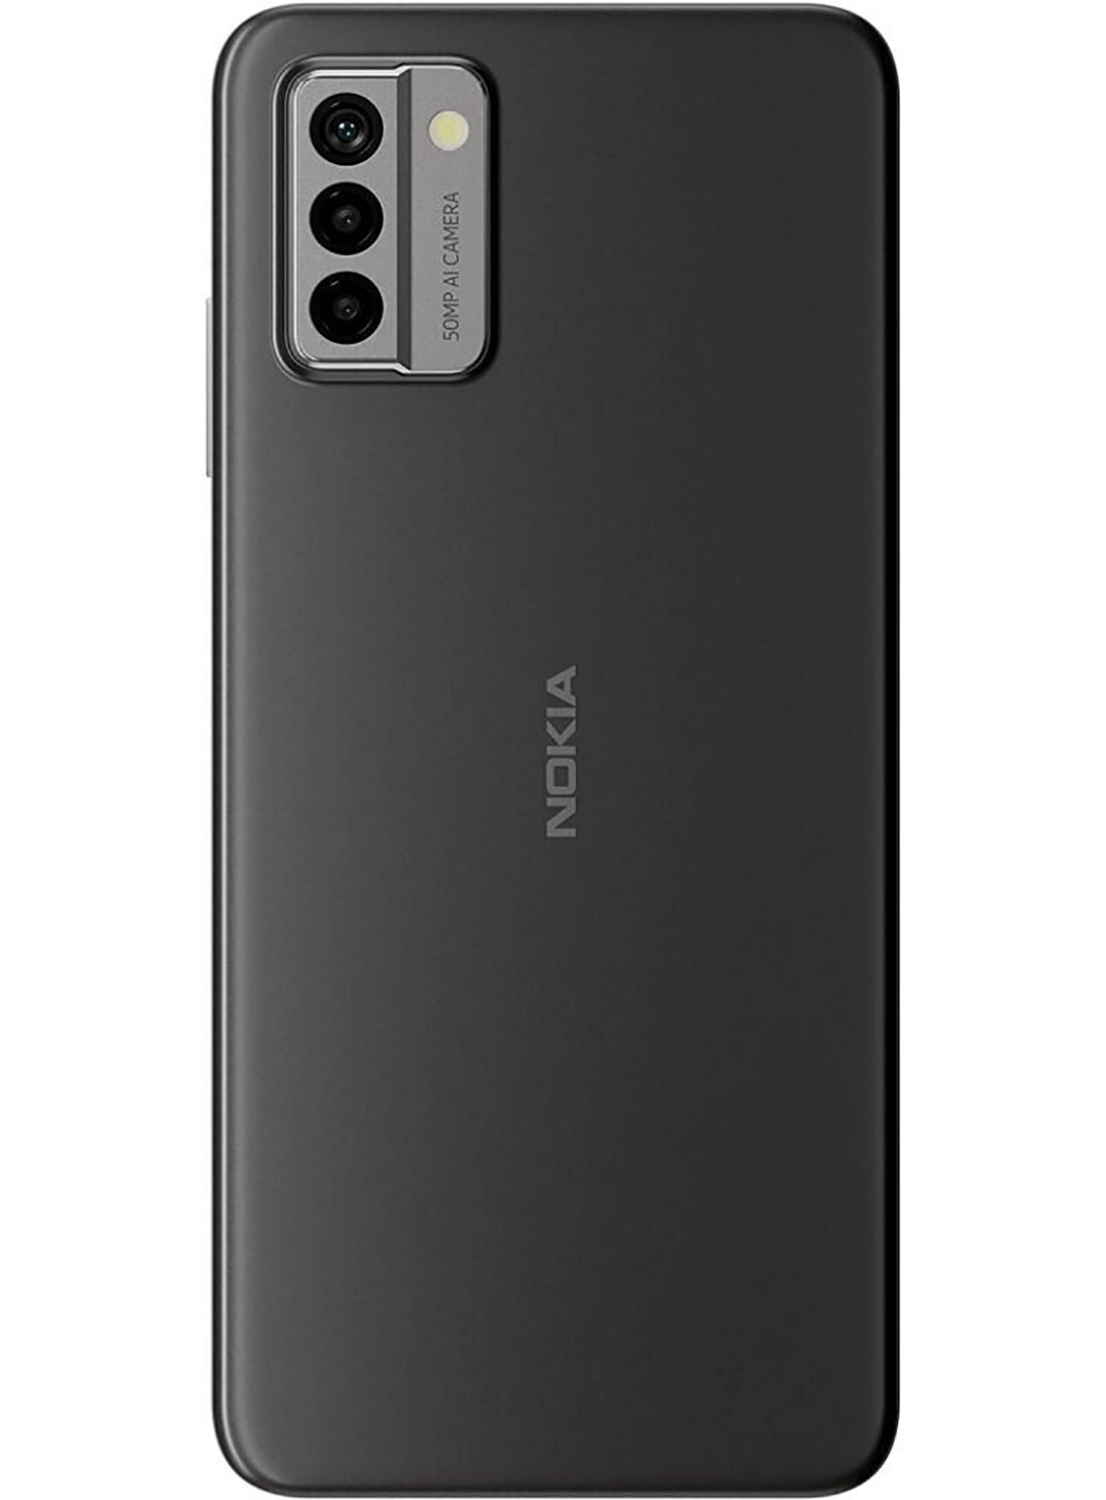 Nokia G22